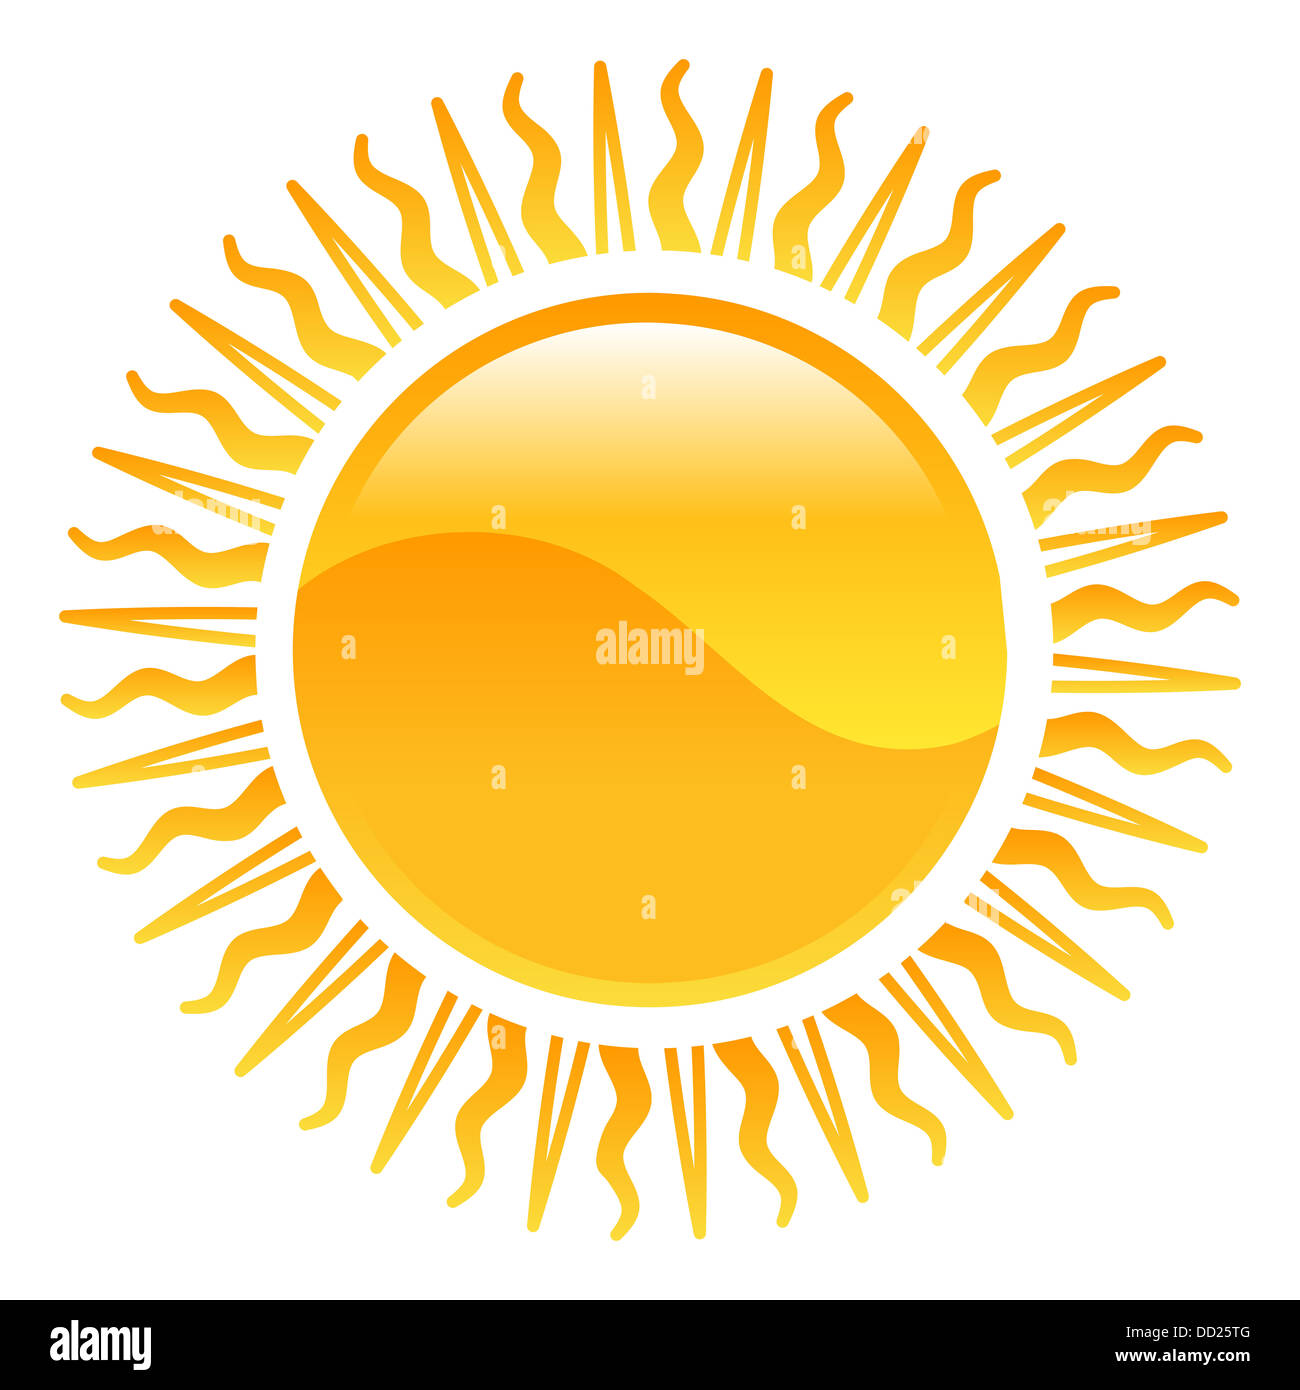 Weather icon clipart sun illustration Stock Photo